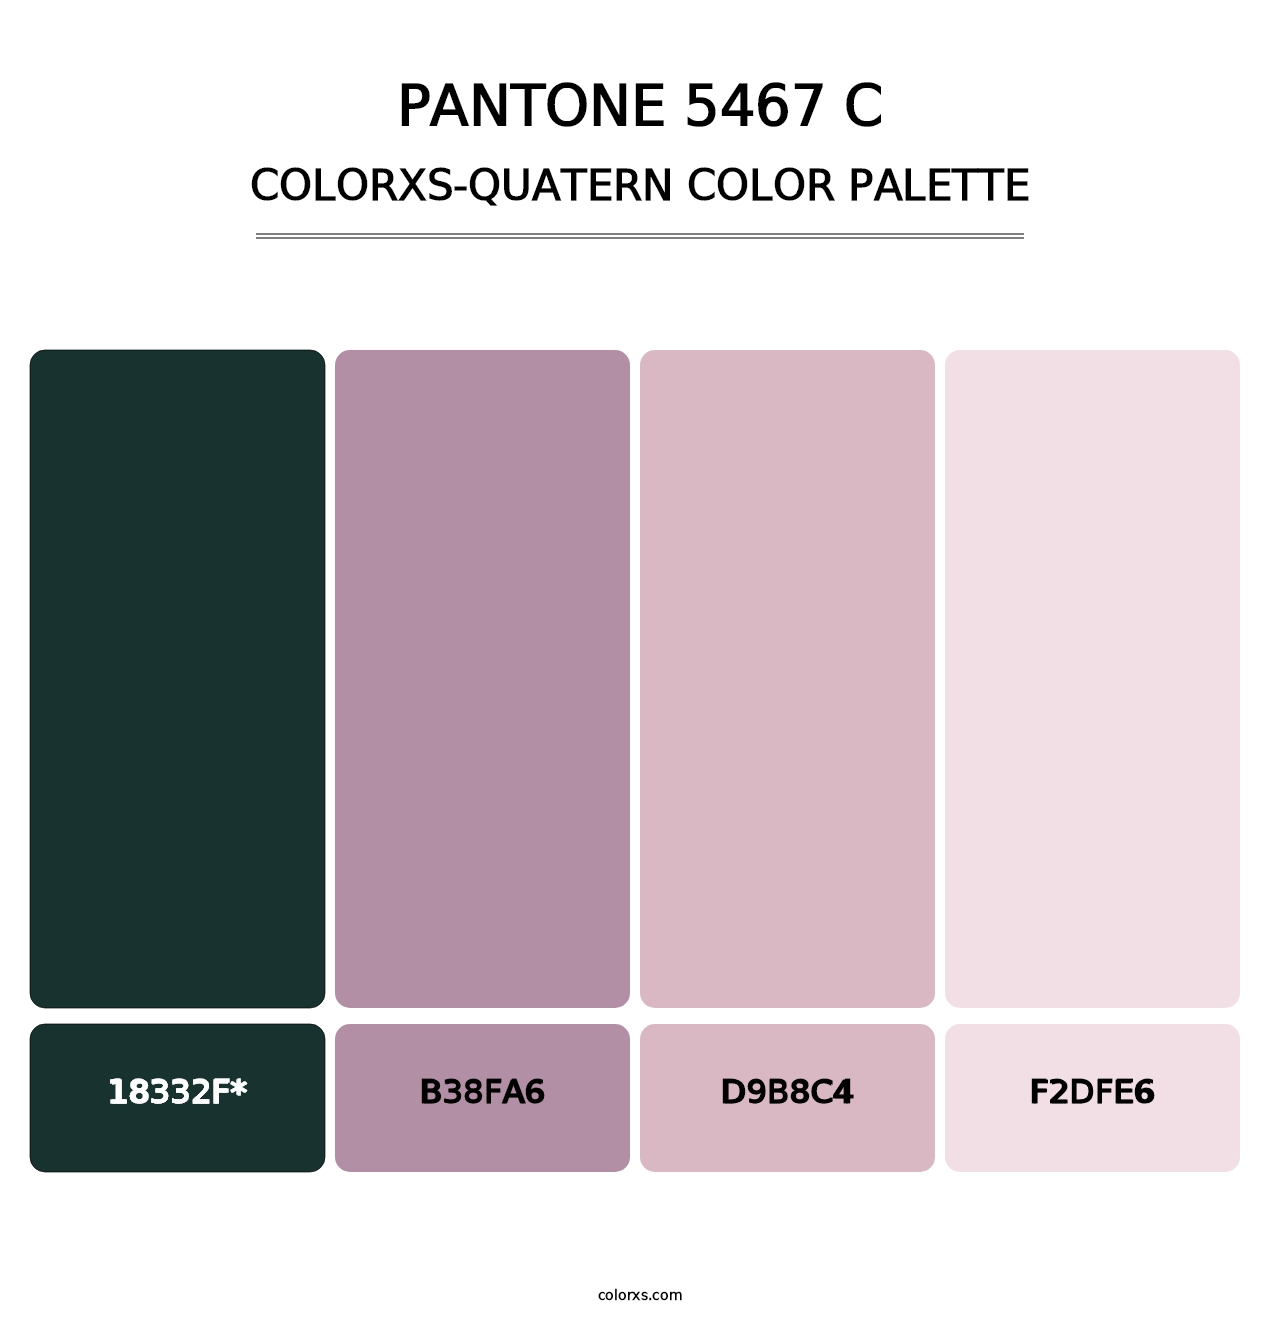 PANTONE 5467 C - Colorxs Quatern Palette